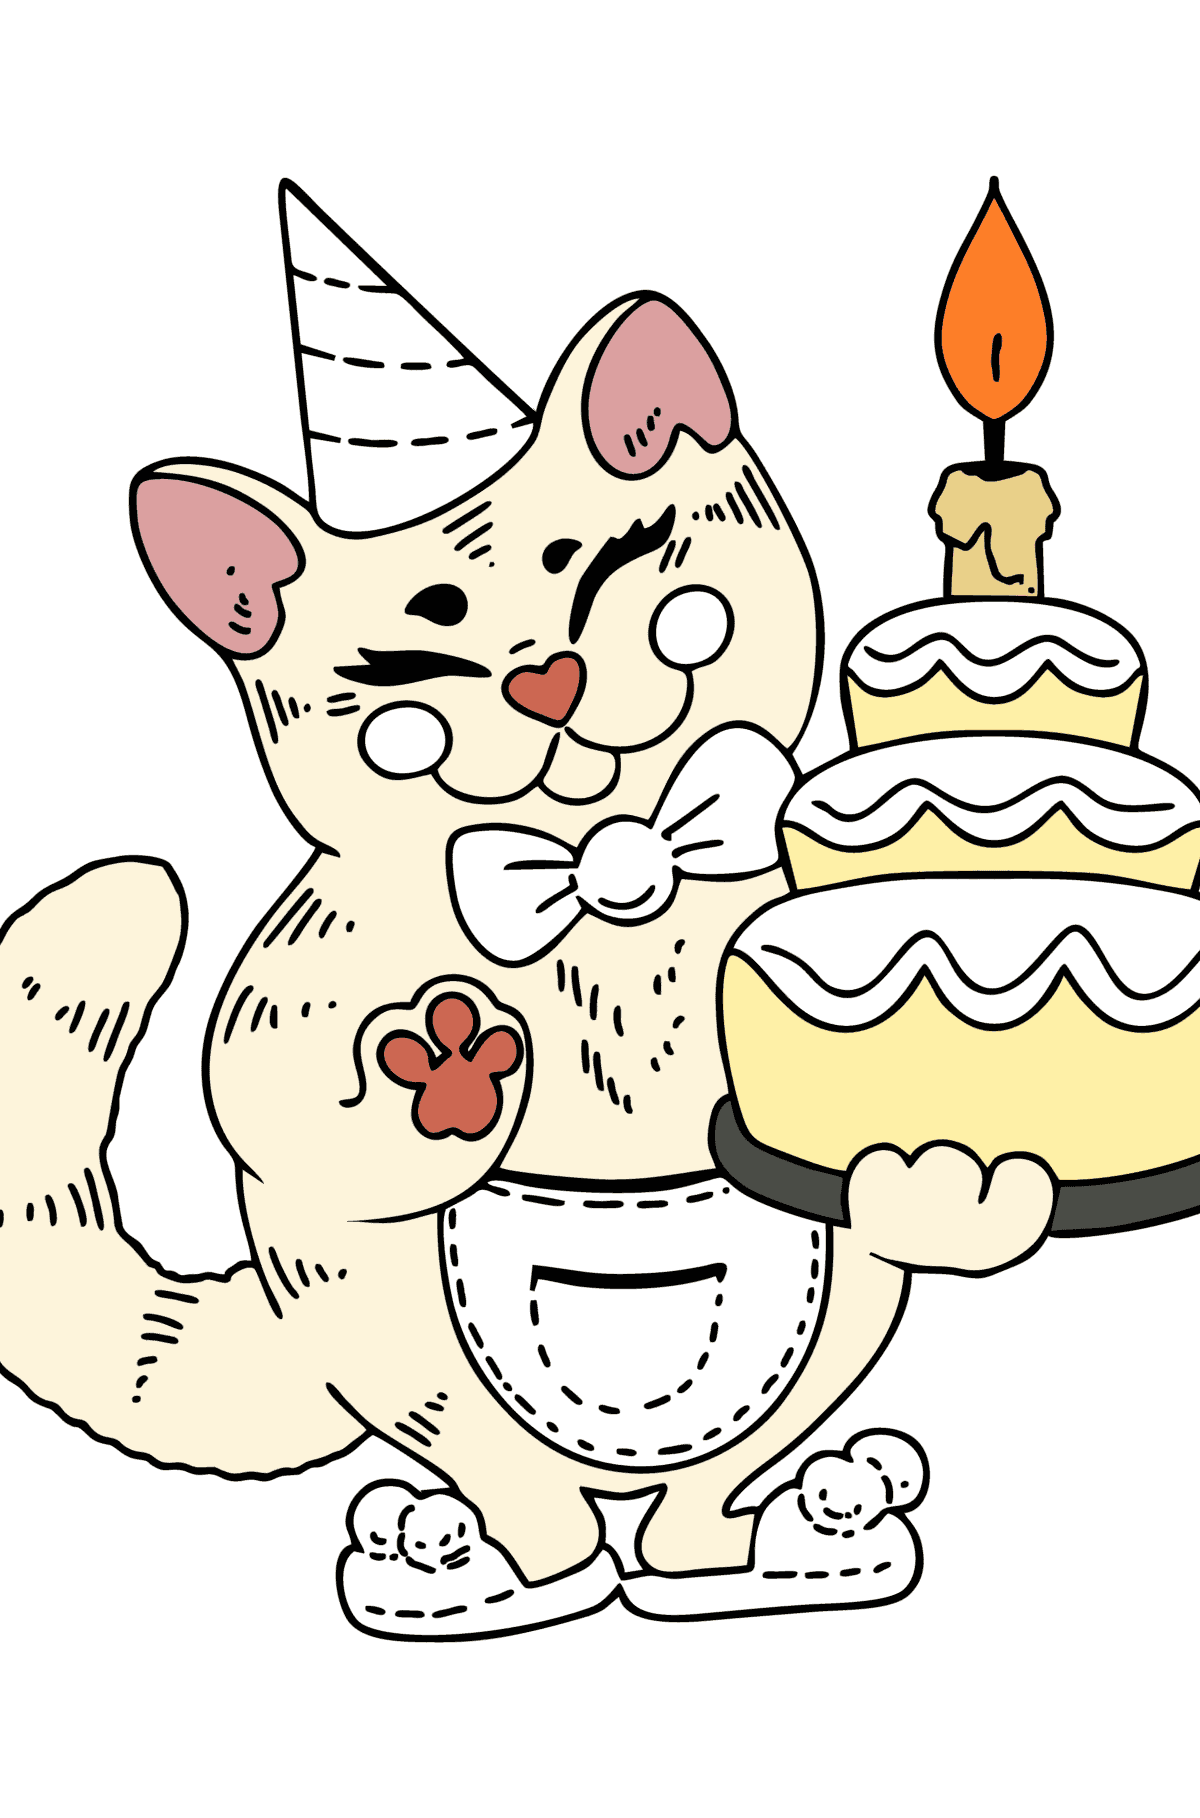 Disegno di Compleanno del gatto da colorare - Disegni da colorare per bambini